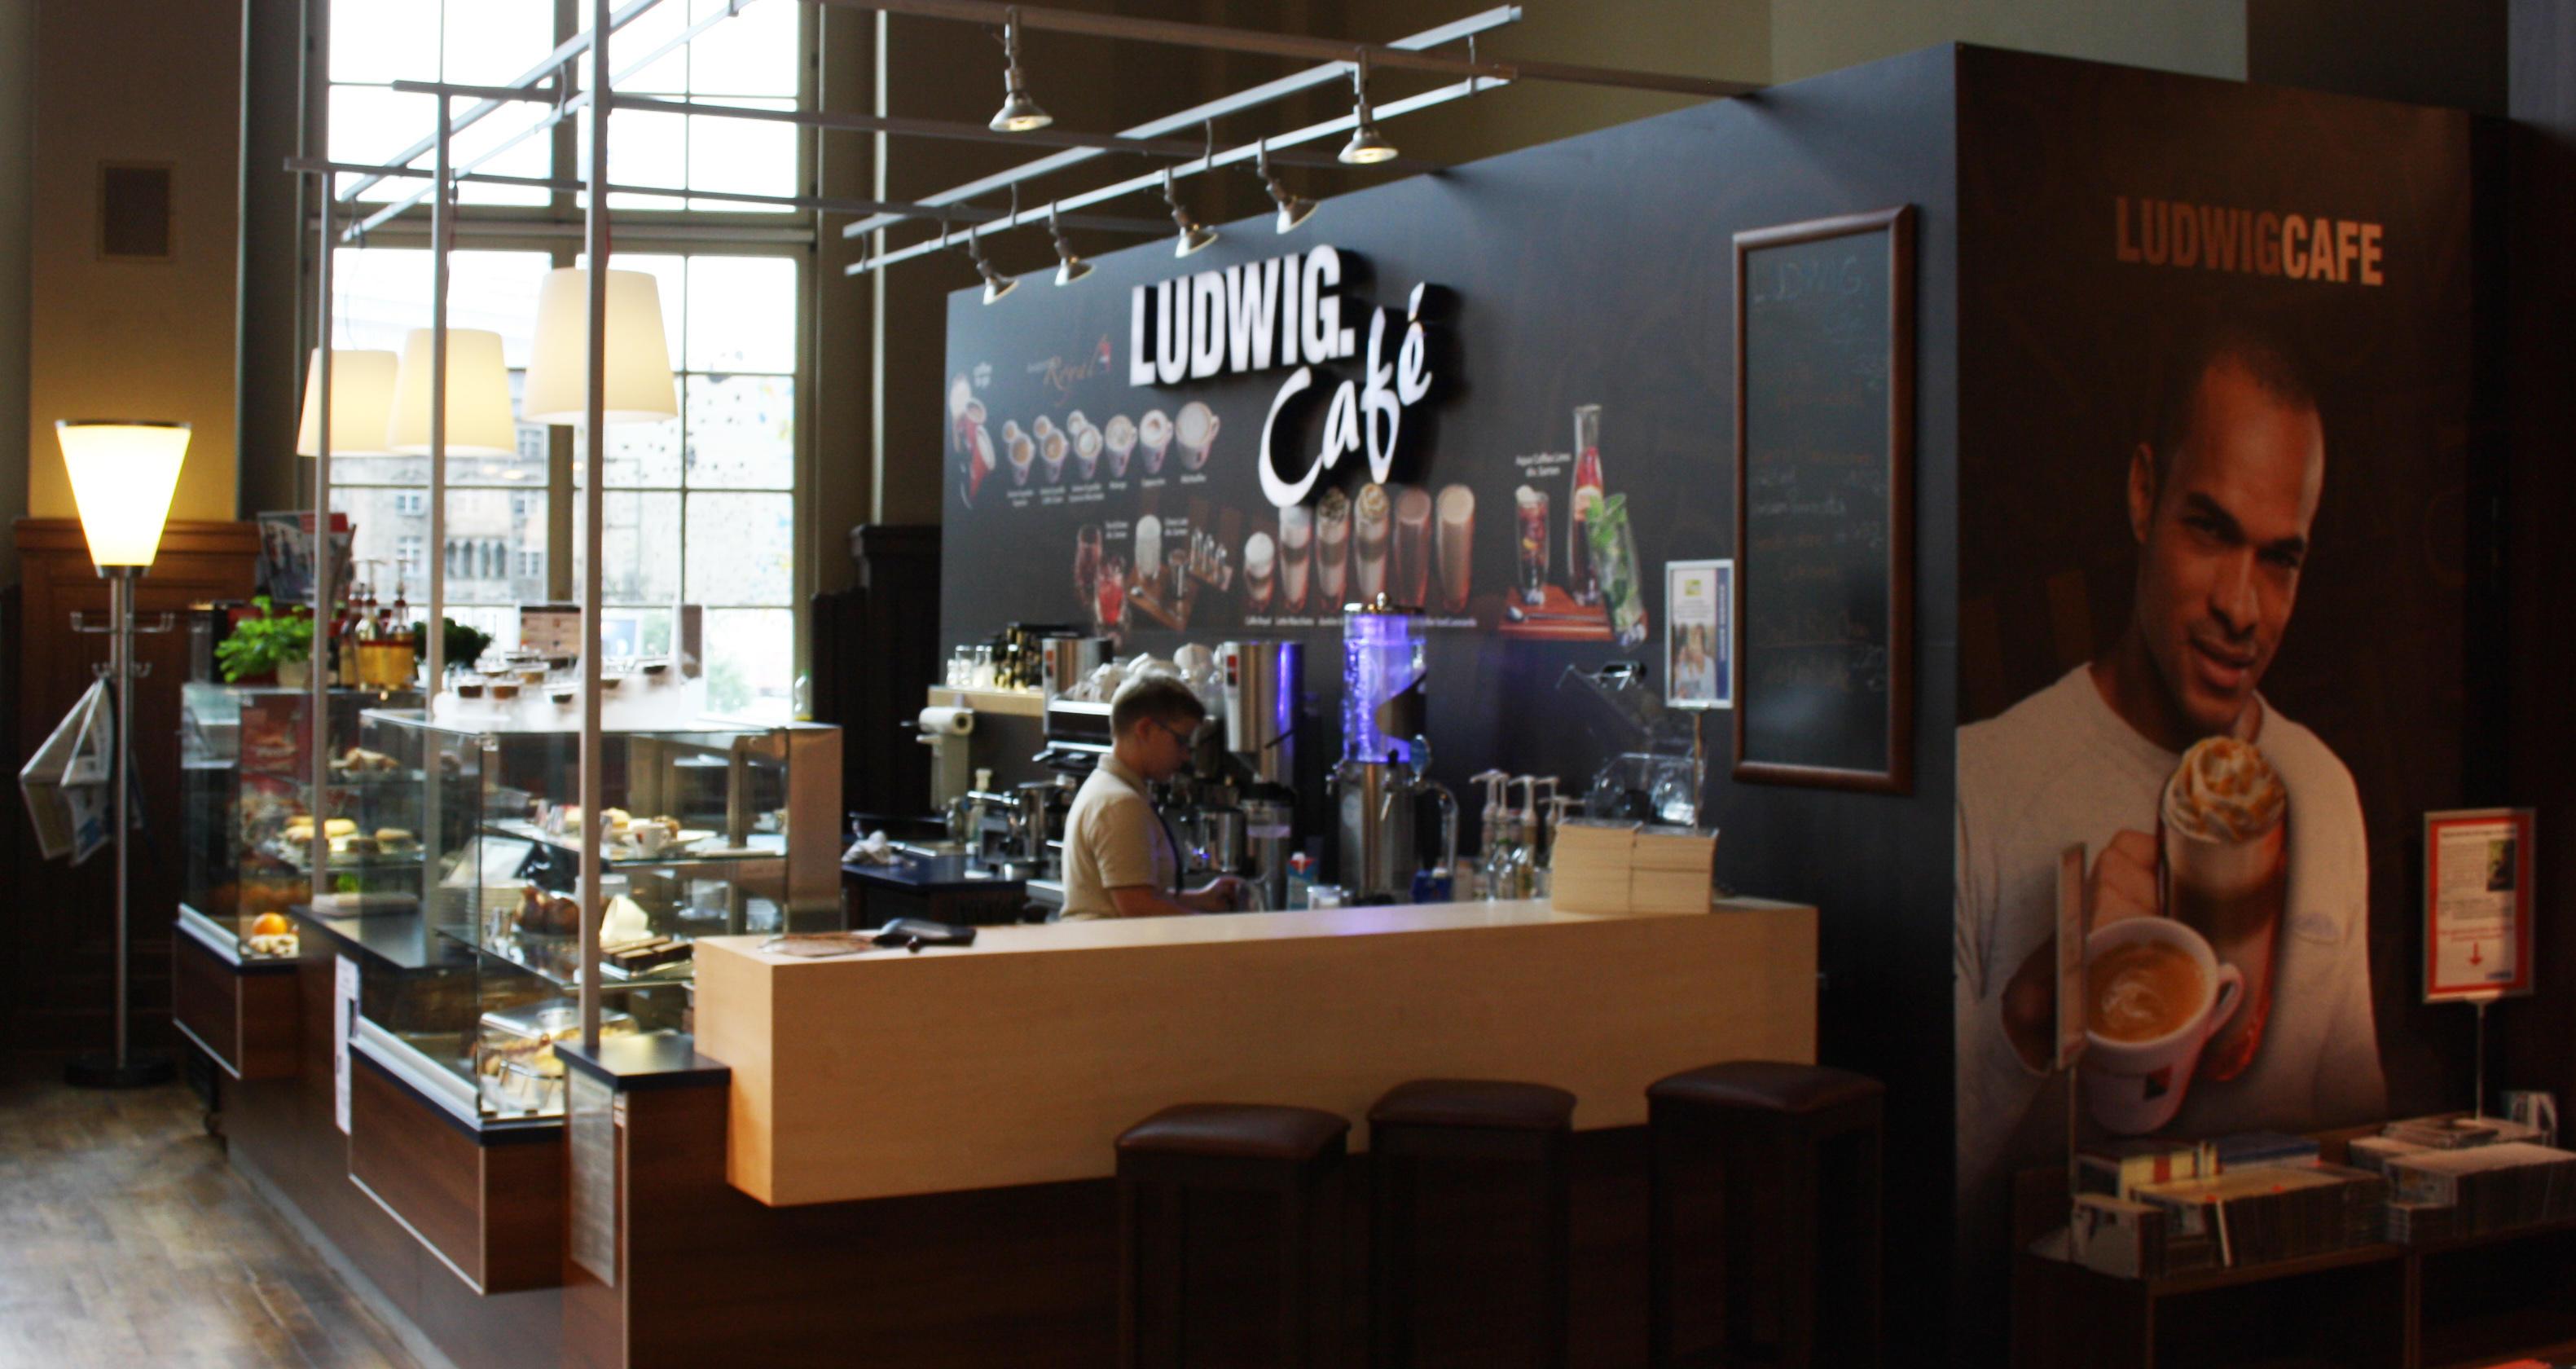 Café Ludwig in Leipzig